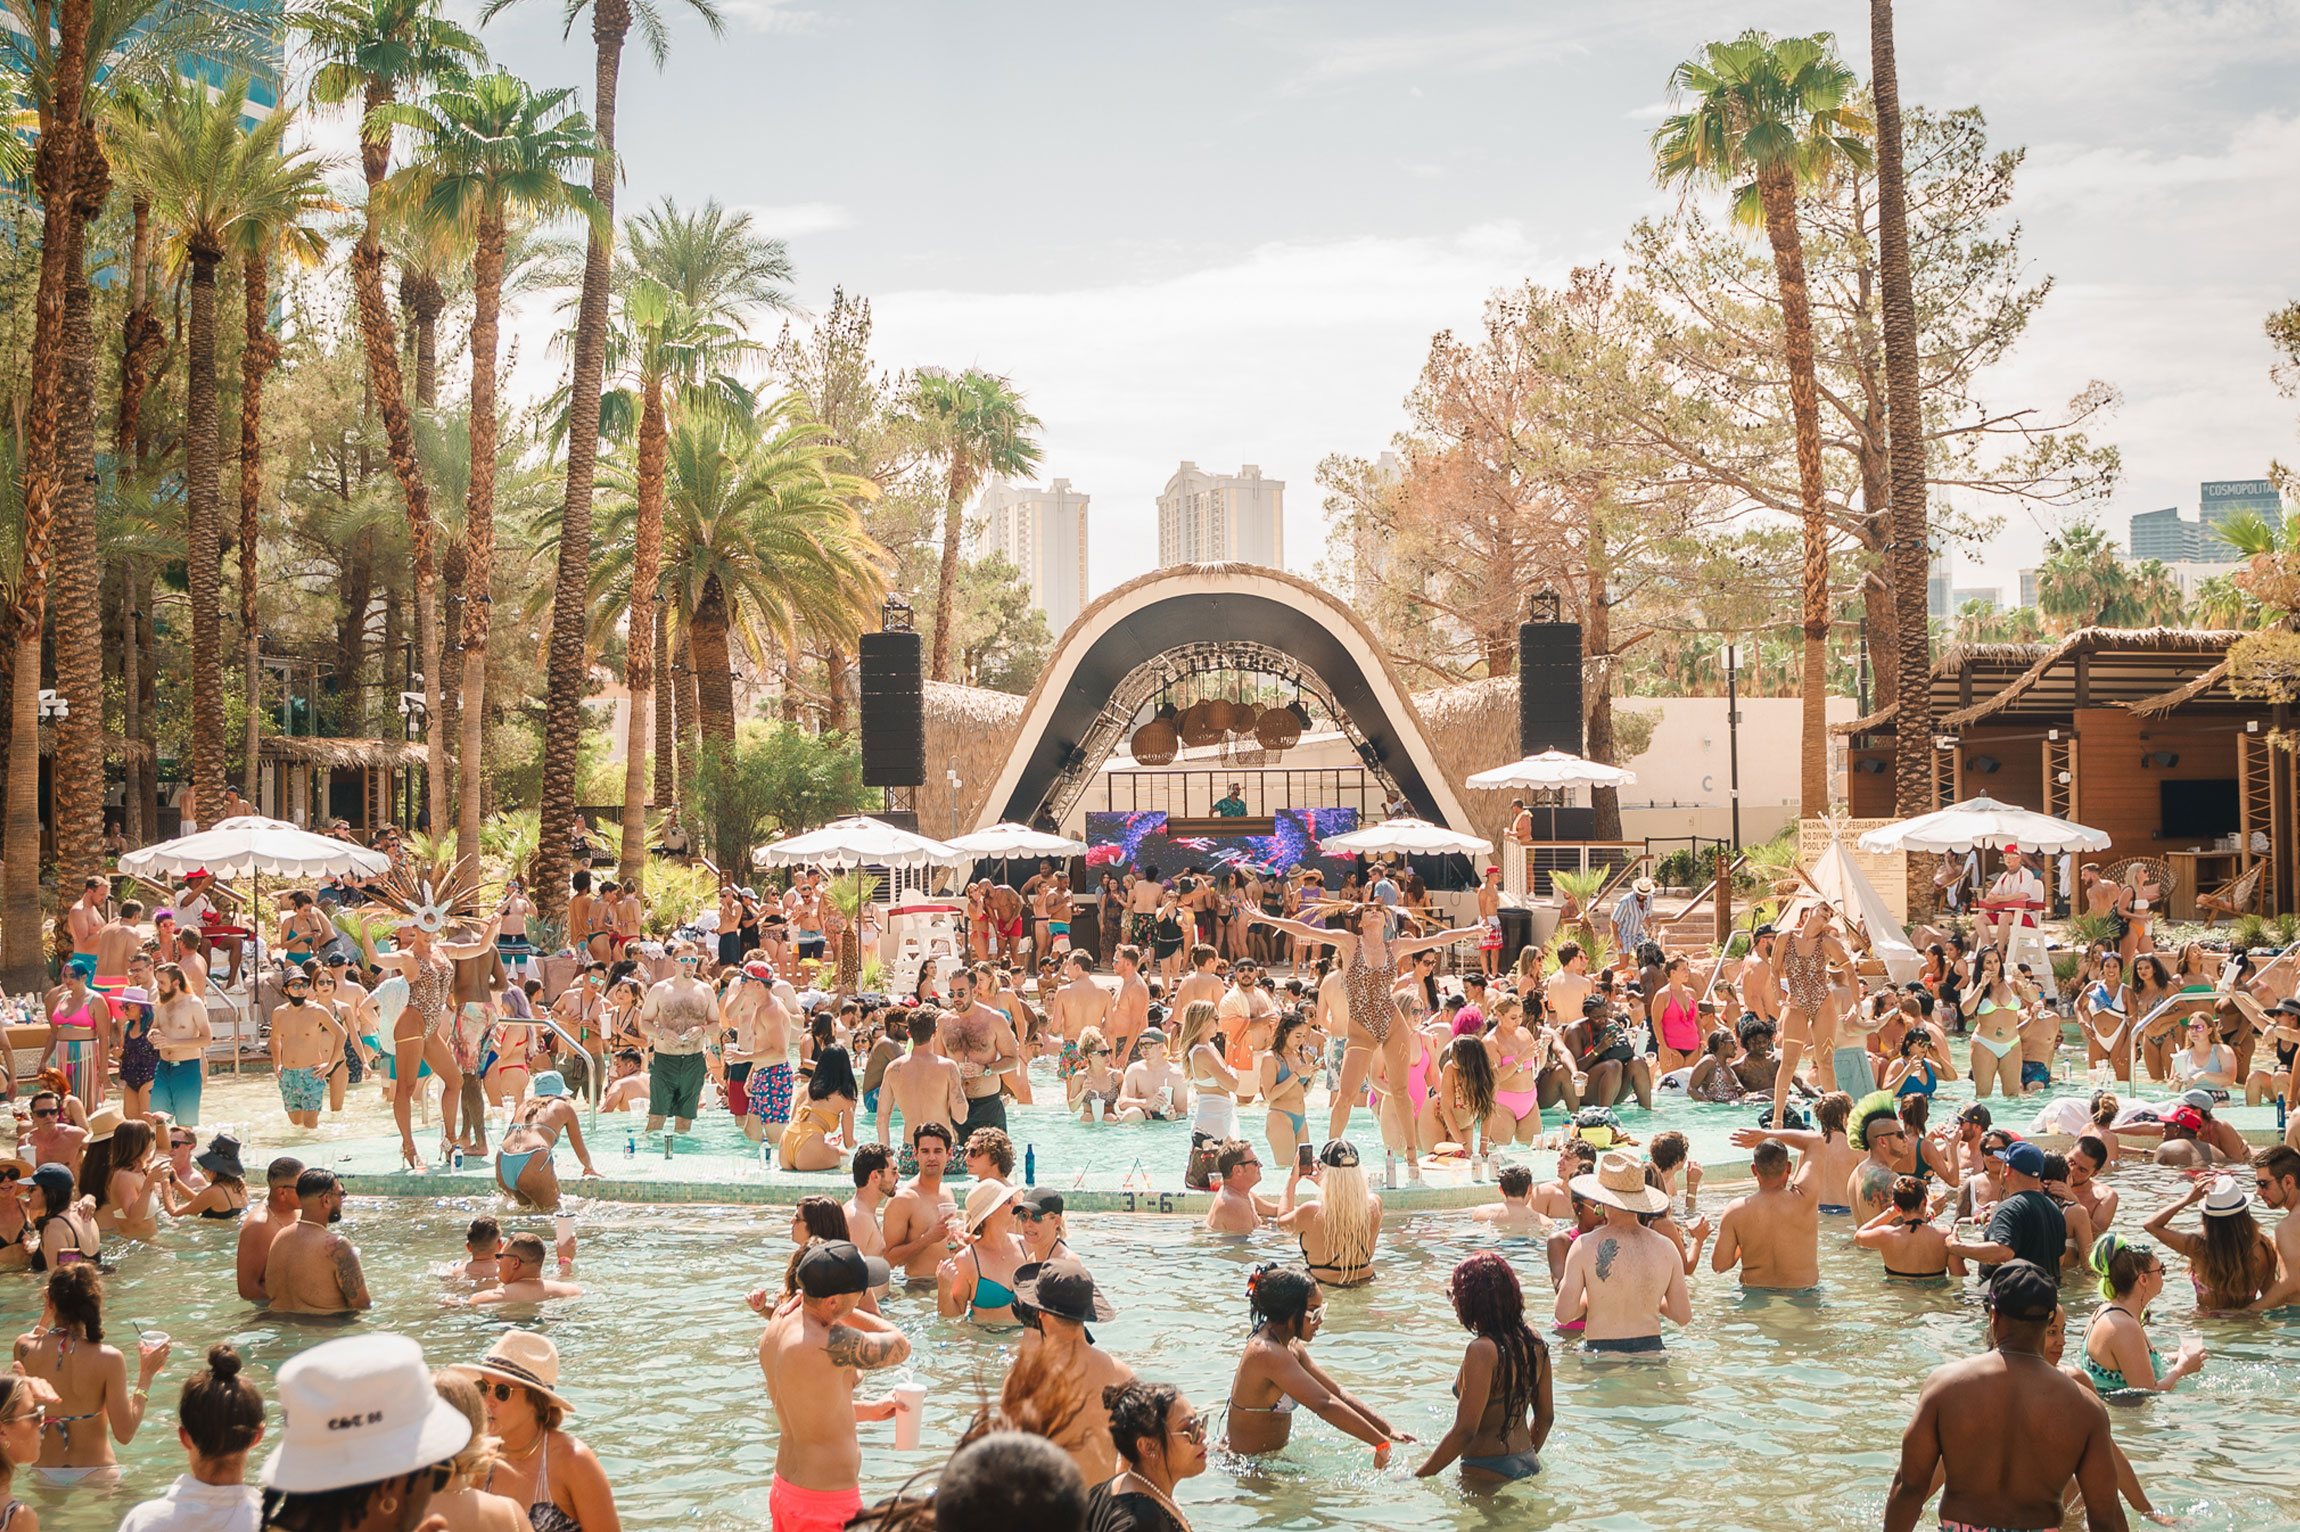 Virgin Hotels Las Vegas to open Élia Beach Club on June 10 - Las